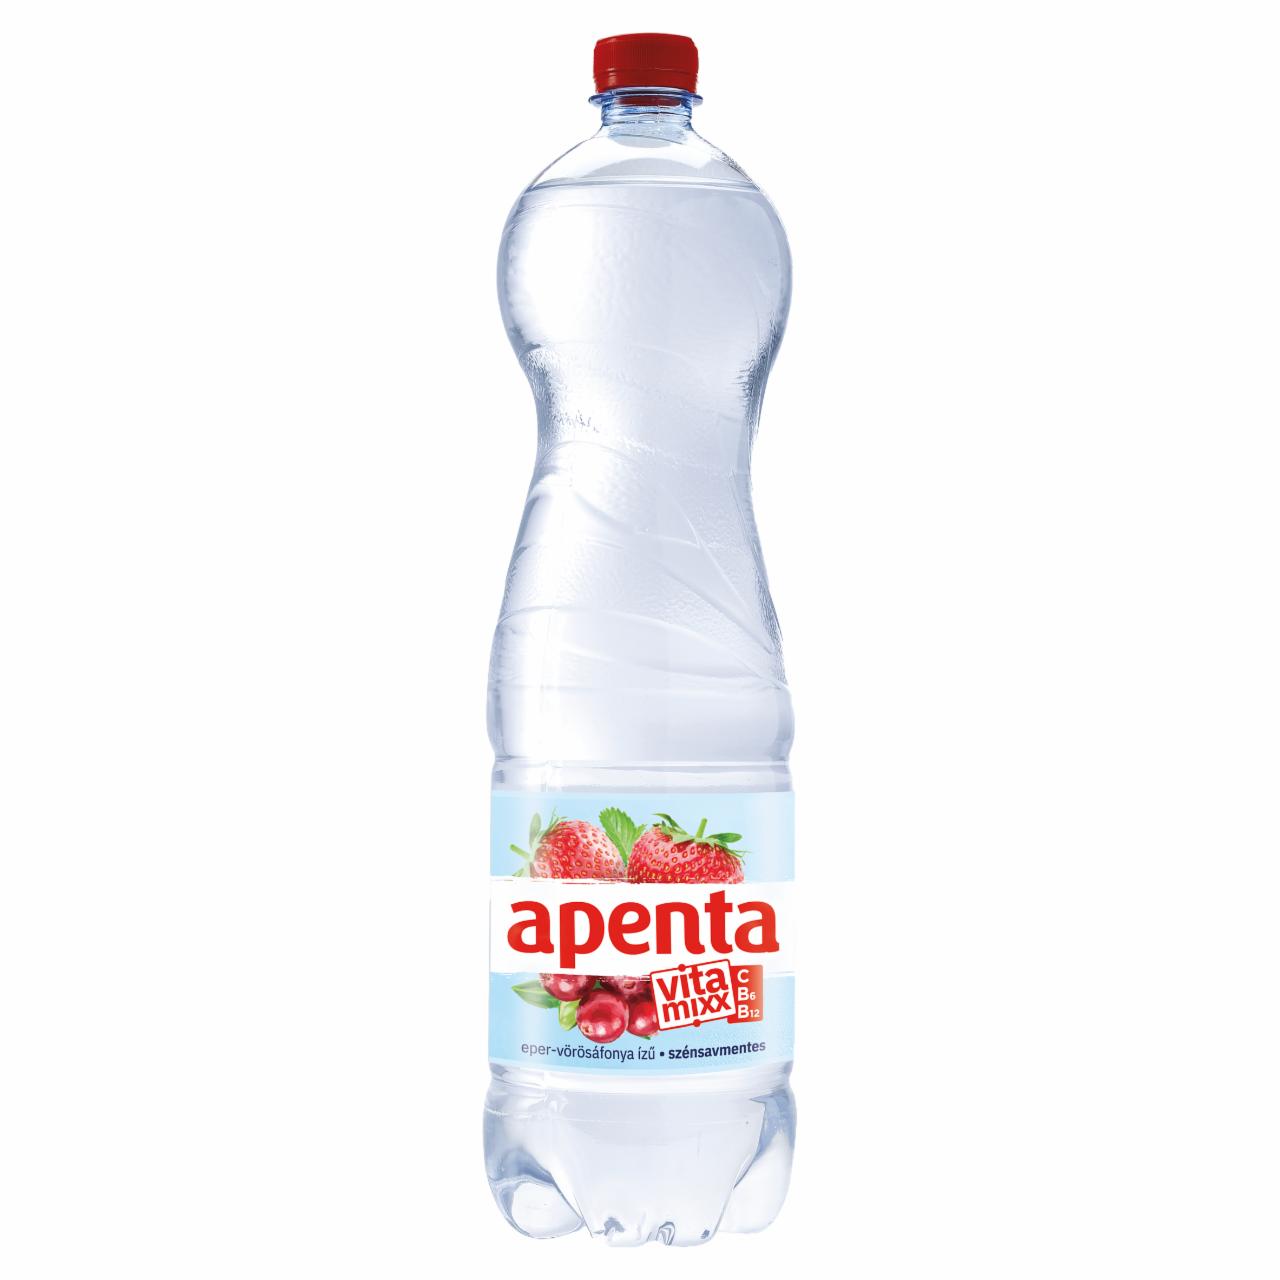 Képek - Apenta Vitamixx eper-vörösáfonya ízű szénsavmentes üdítőital természetes ásványvízzel 1,5 l